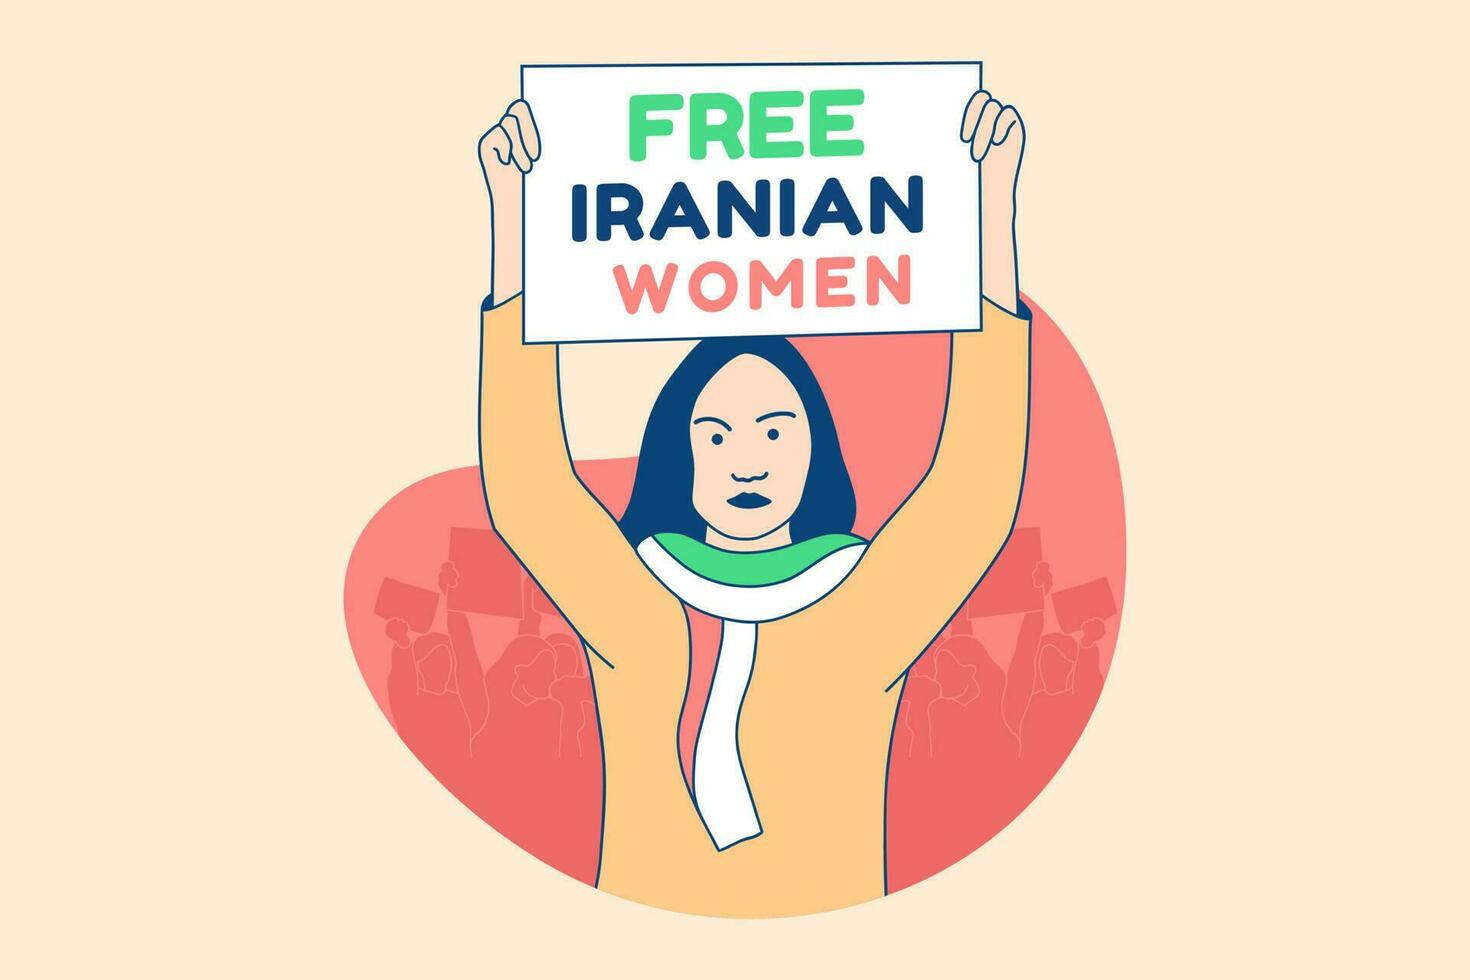 illustrazioni bellissimo iraniano donna manifestanti per gratuito iraniano donne campagna design concetto vettore